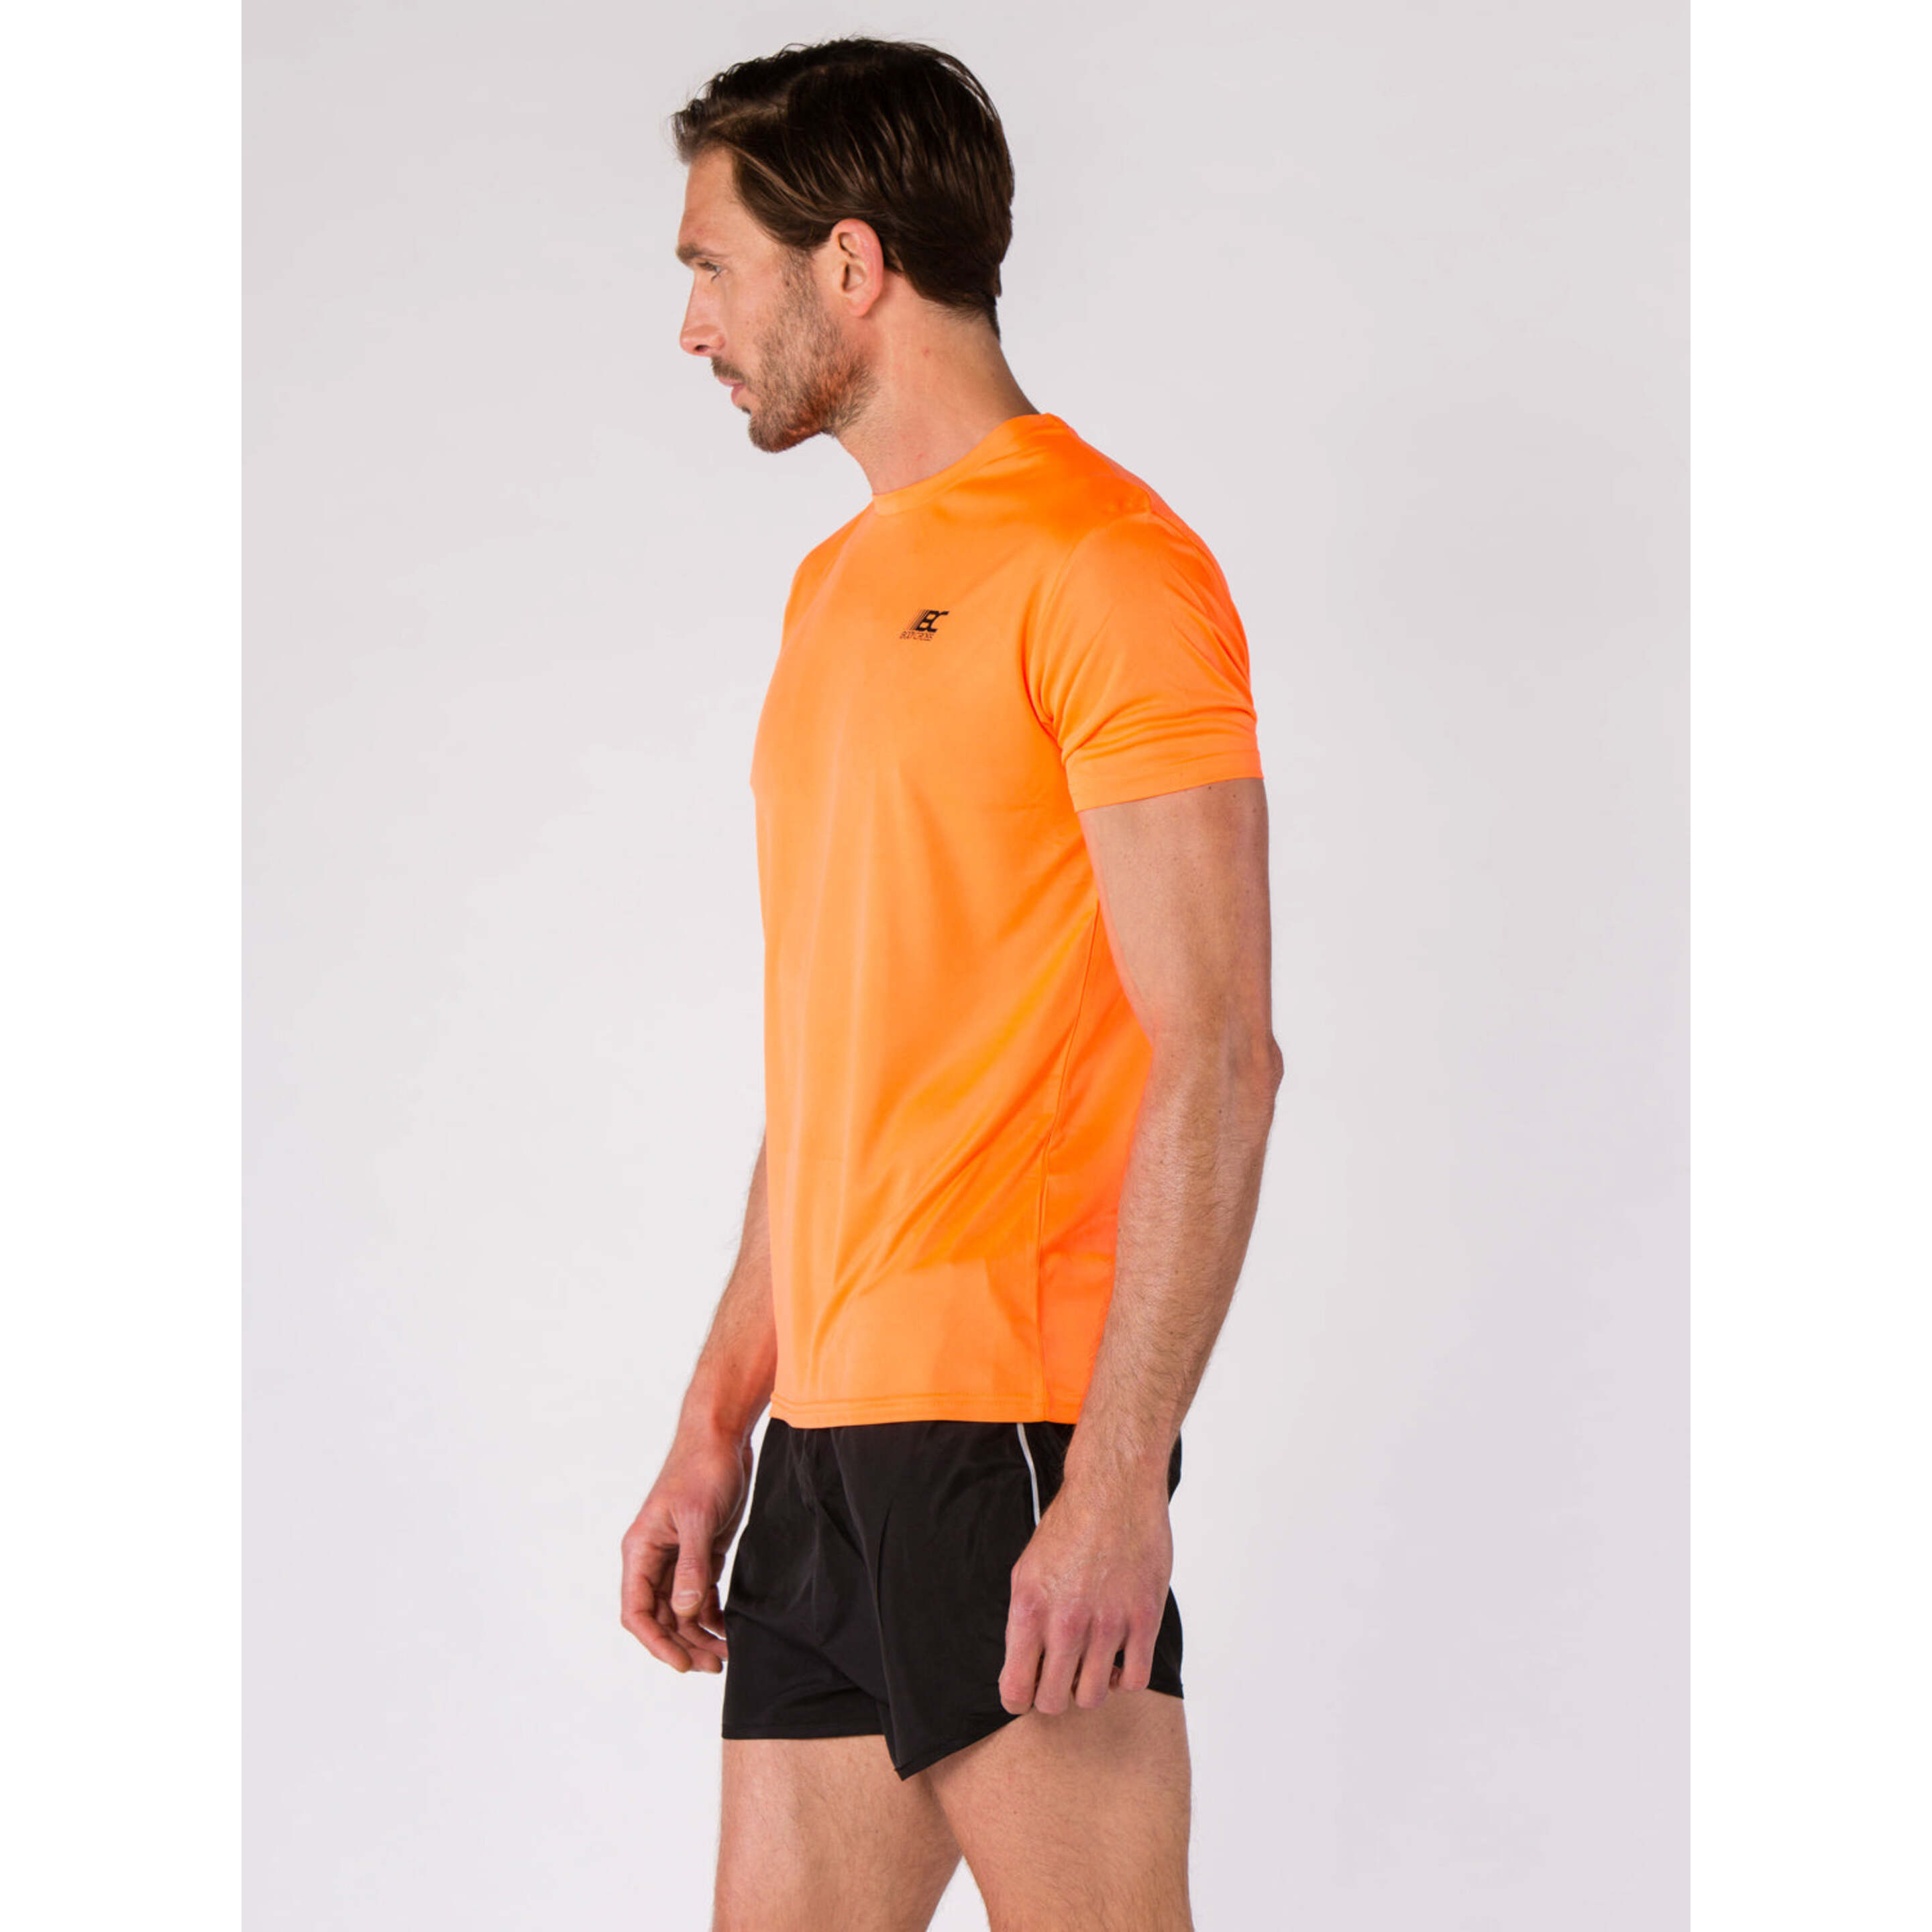 Camiseta Bodycross Mio - Naranja - Meo2-neon Orange/black-l  MKP